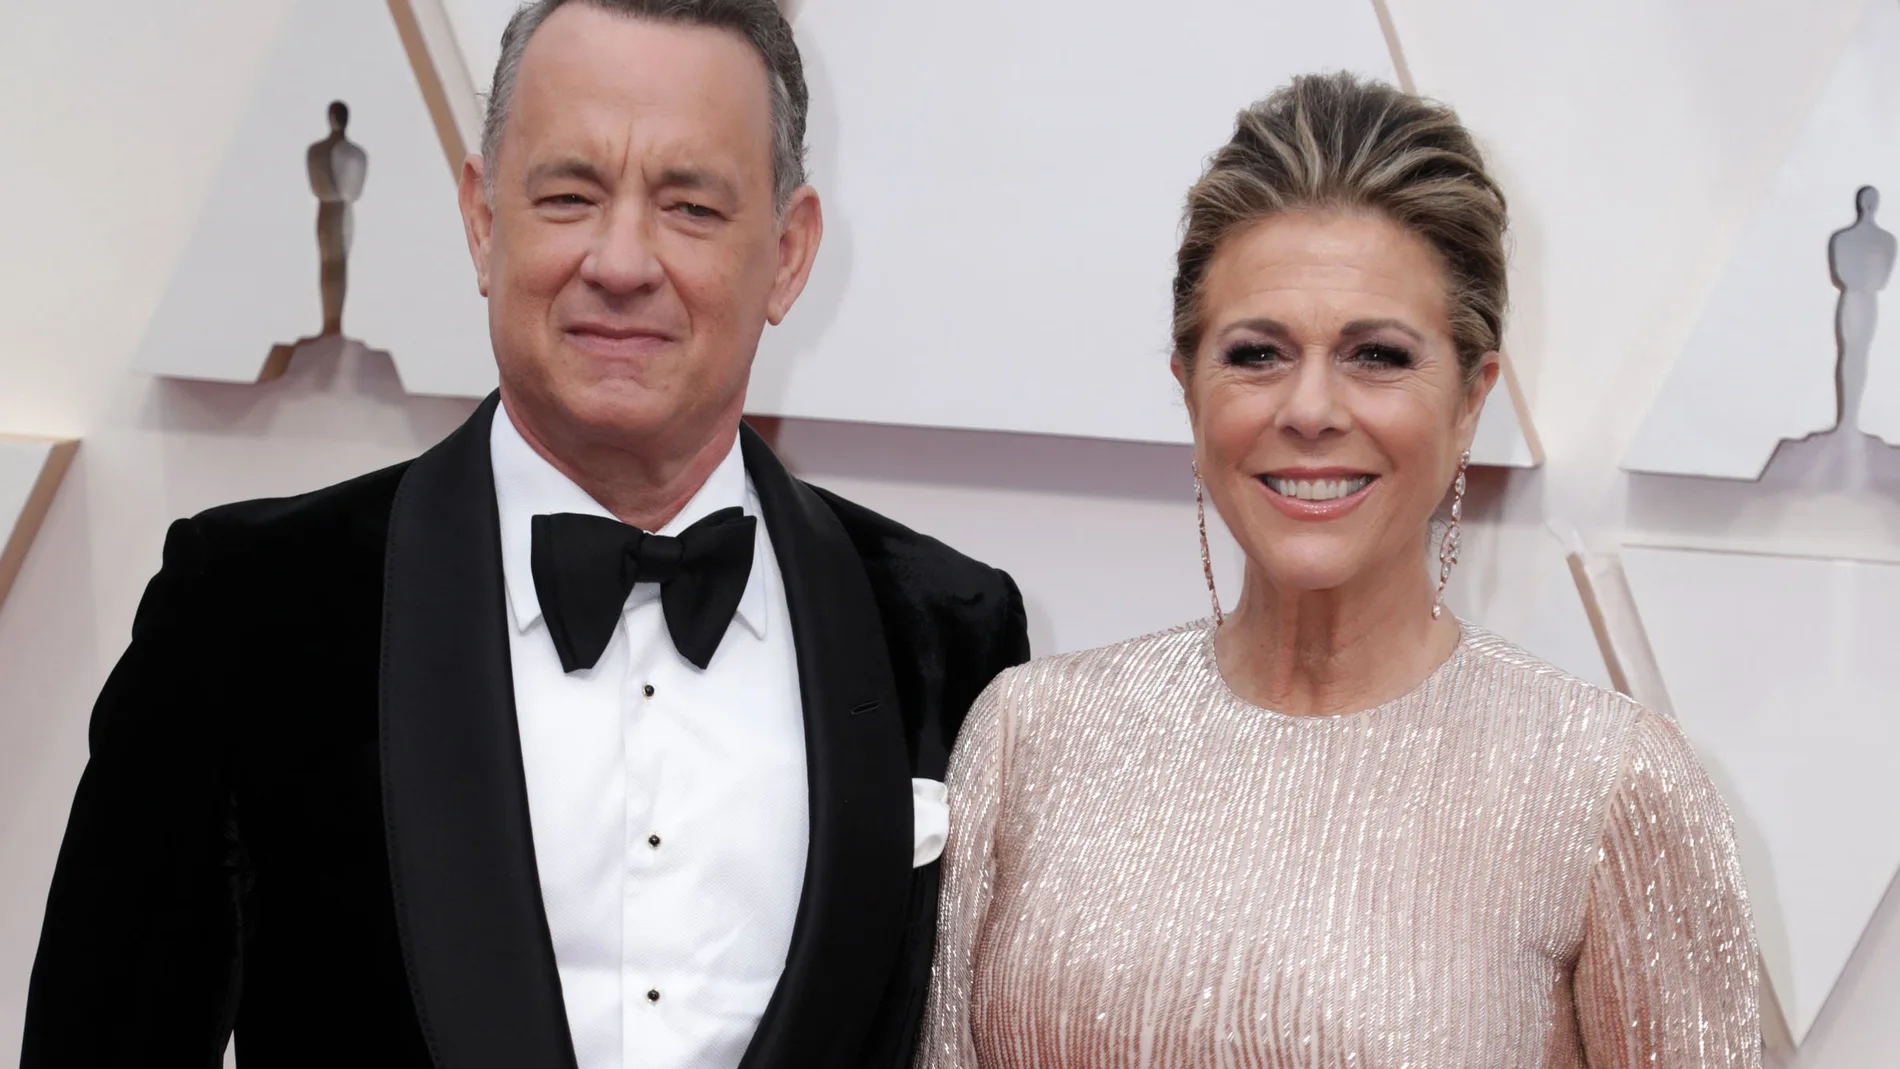 Tom Hanks y su mujer confirman que padecen el COVID-19